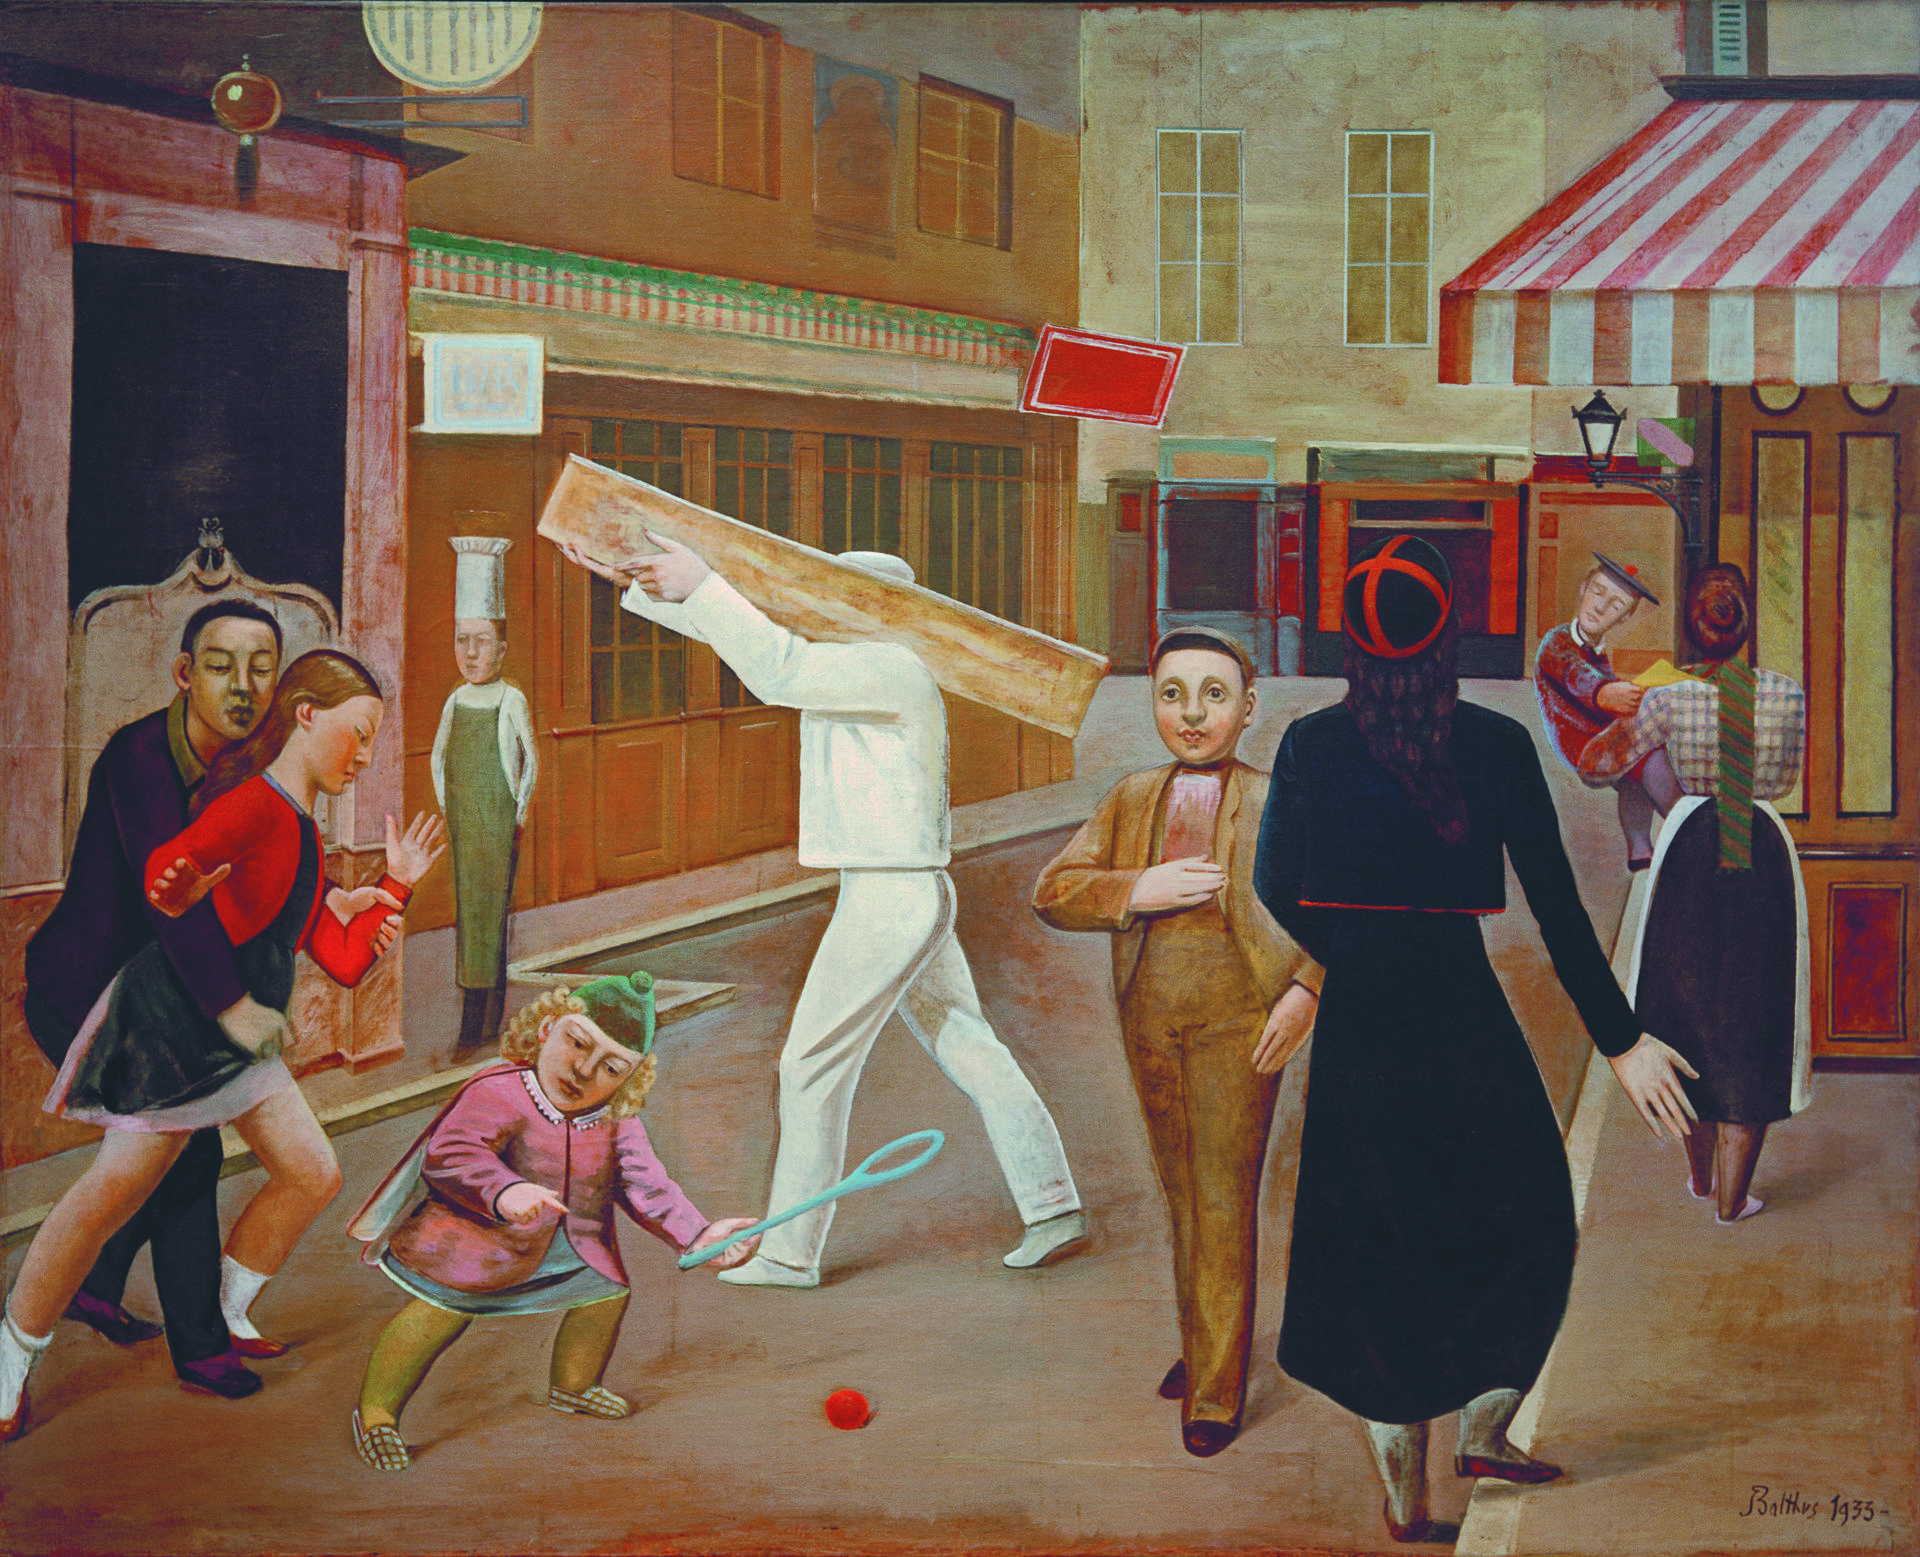 Balthus, 'La Rue (La strada)', 1933, olio su tela, James Thrall Soby Bequest, inv. 1200.1979 New York, The Museum of Modern Art © Balthus © MONDADORI PORTFOLIO/AKG Images (Scuderie del Quirinale)